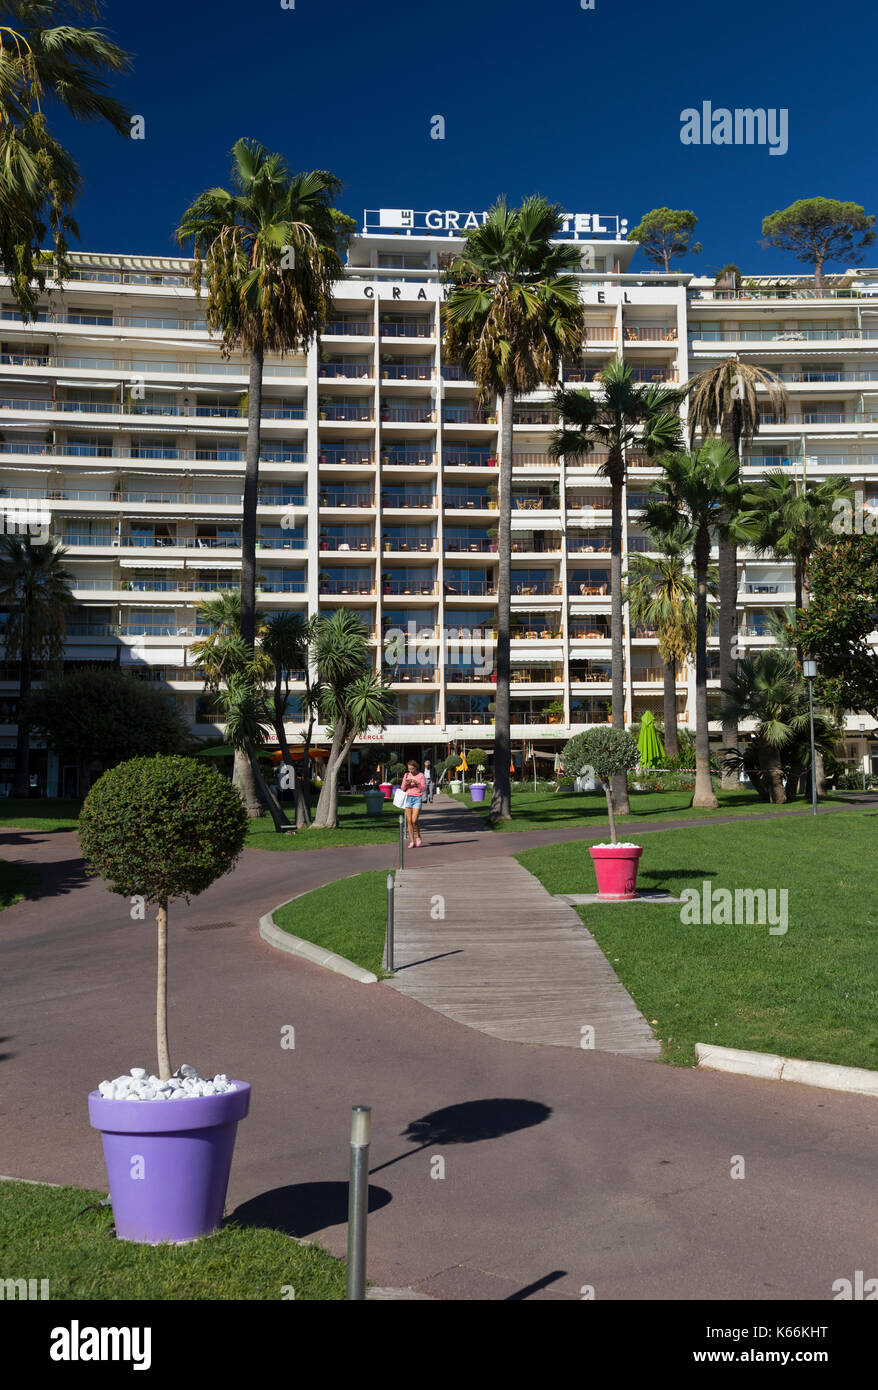 Entrée au Grand Hôtel, Boulevard de la Croisette, Cannes, France Banque D'Images